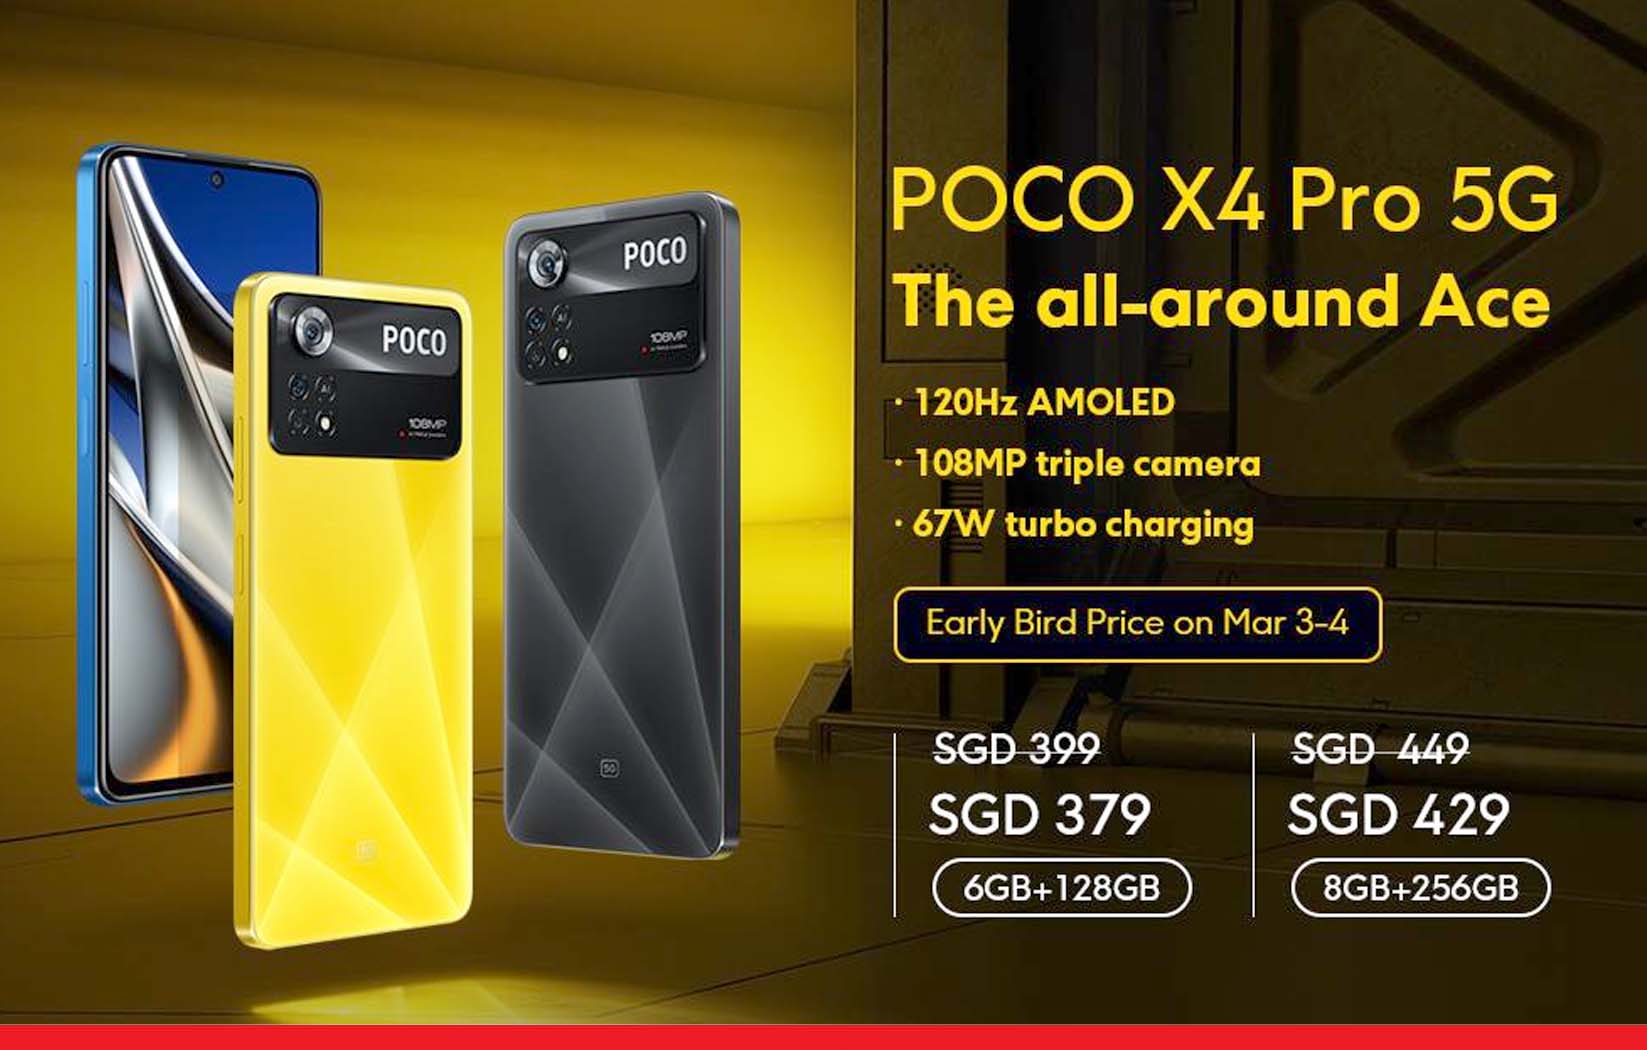 फ्लिपकार्ट बिग दिवाली सेल पर पोको X4 Pro 5G स्मार्टफोन पर पाएं बंपर छूट